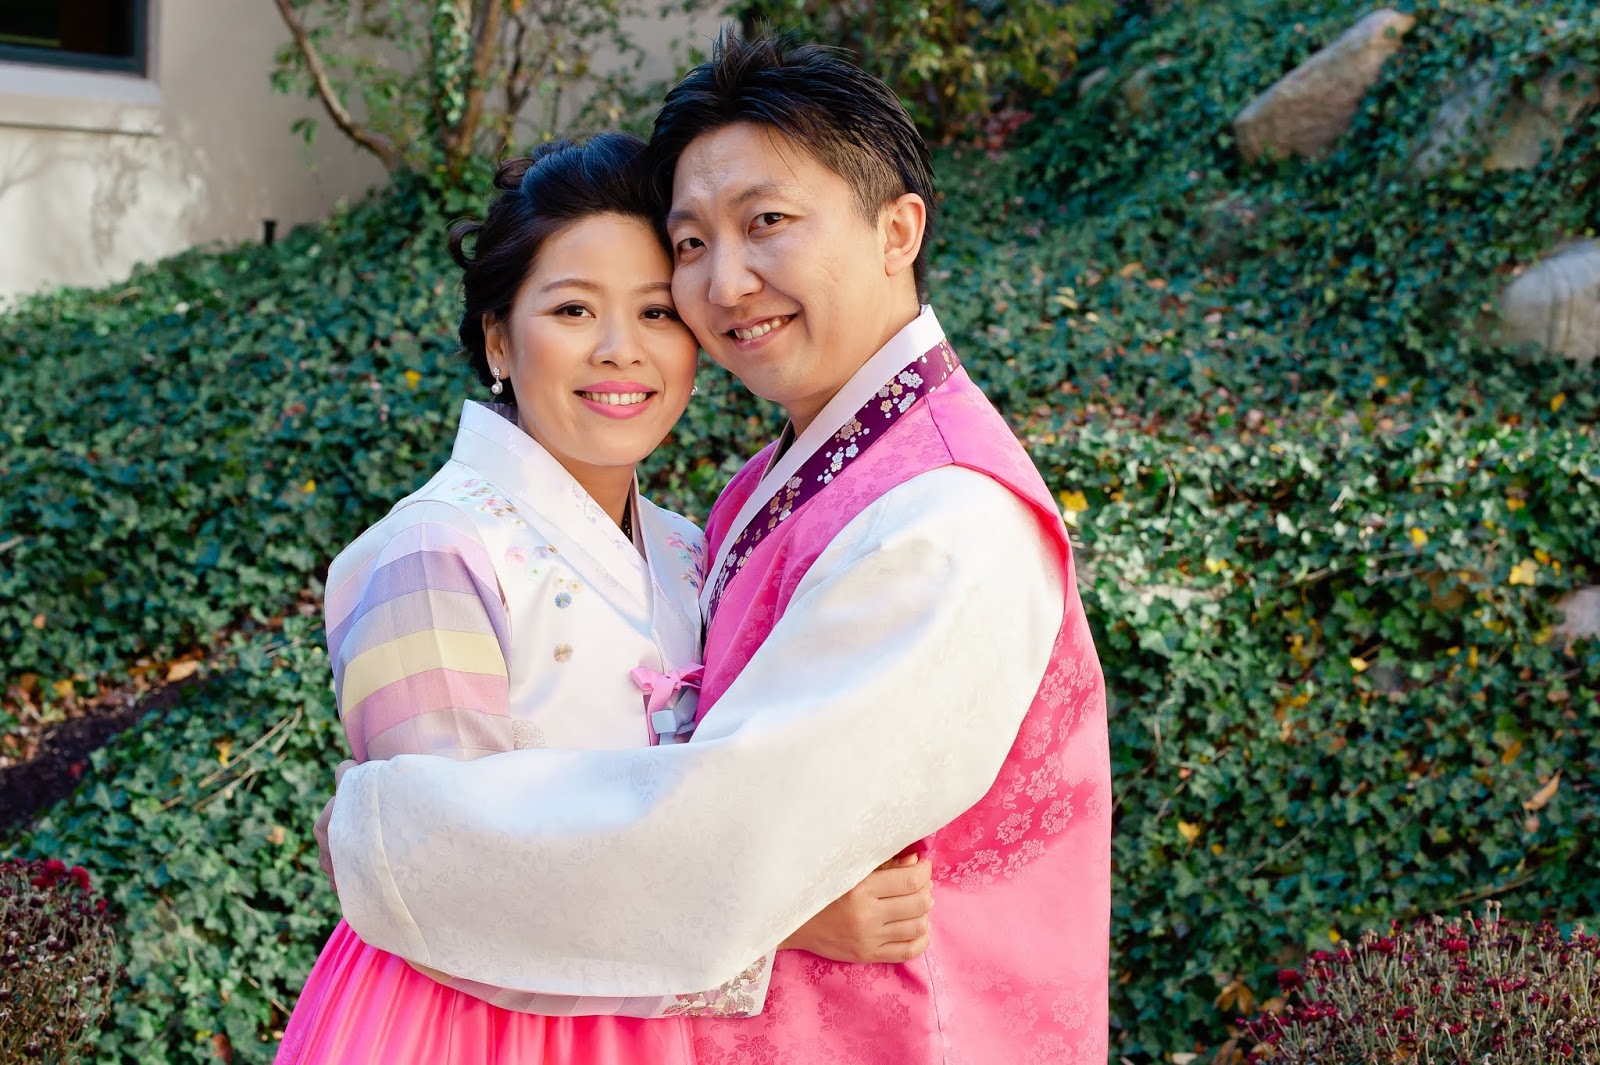 Korean bride and groom